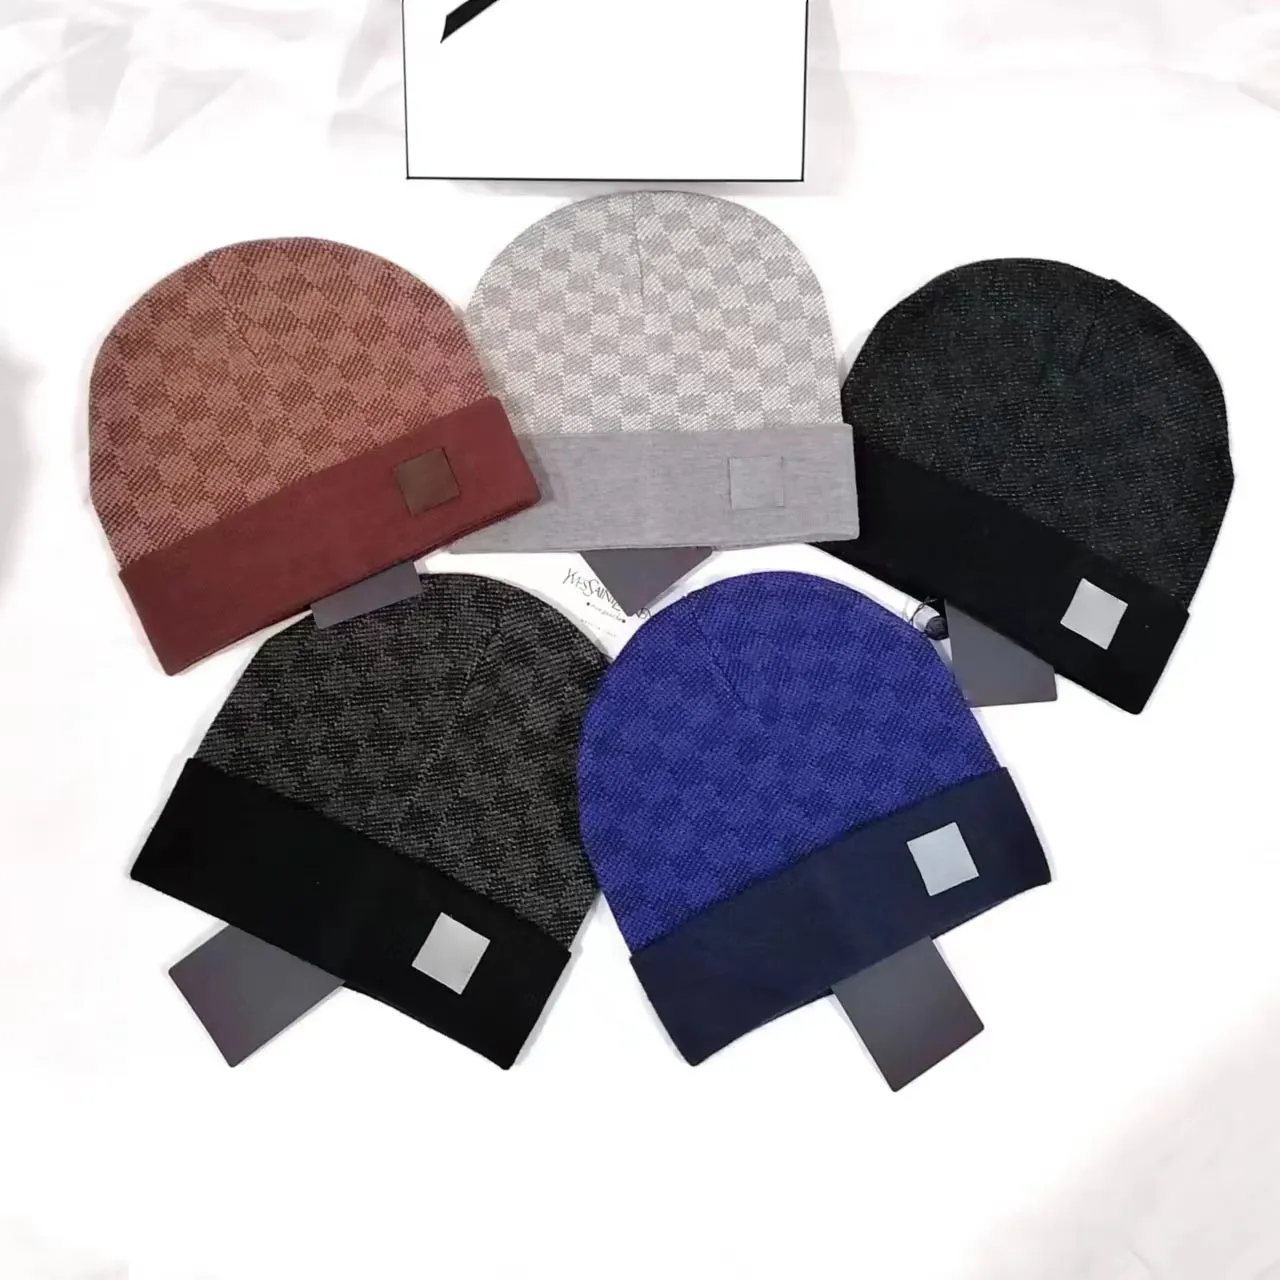 Siyah Beanie Tasarımcı Beanie Şapkalar Sıcak Kış Şapkası Noel Hediye Şapkaları Sıcak Bonnet Şapka Şapka Kapağı Örme Şapka Bahar Kafatası Kapakları 5 Renk